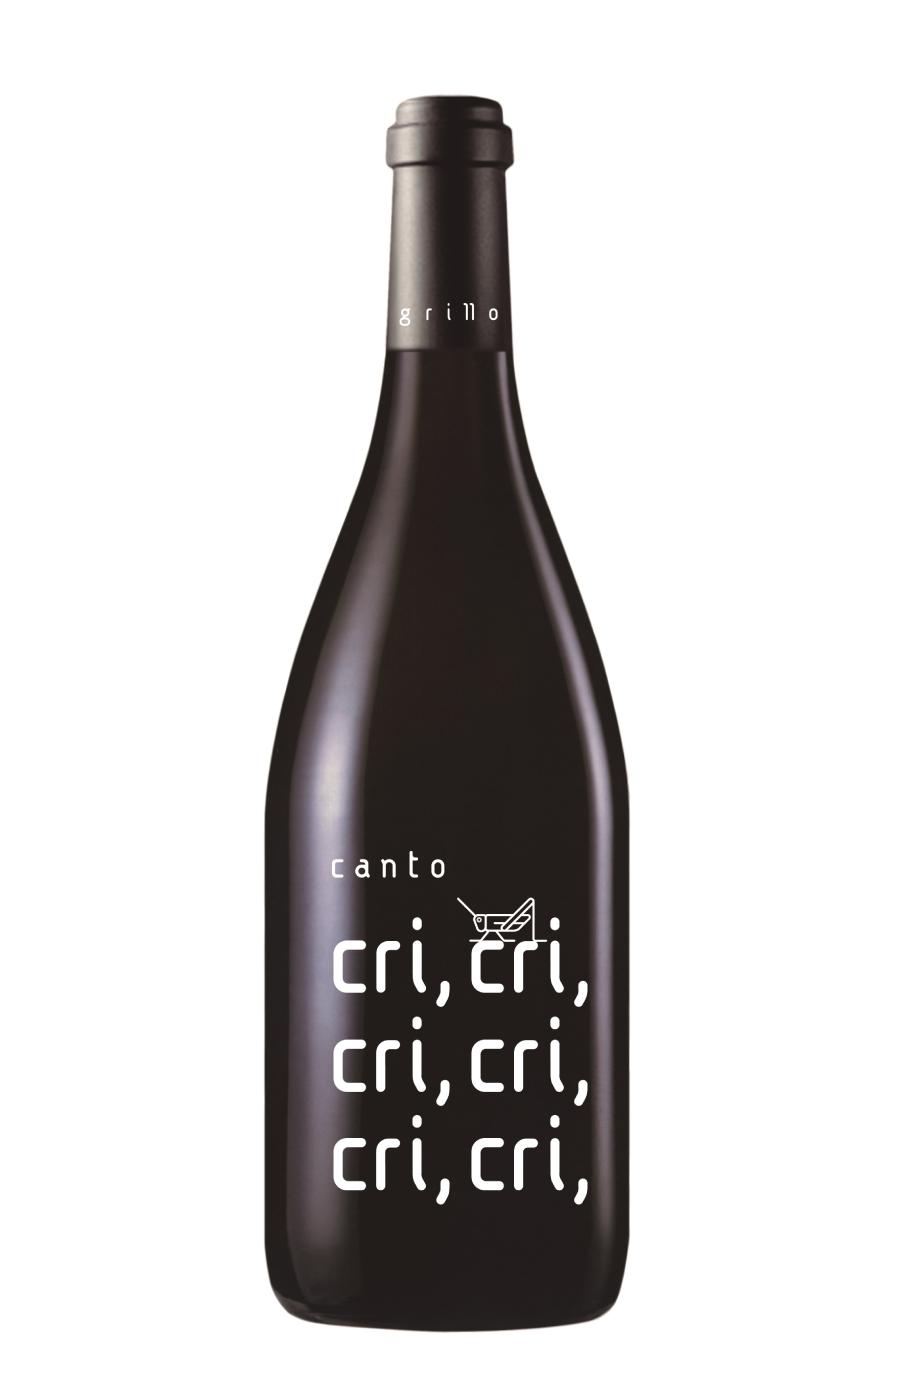 El Grillo y la Luna lanza la nueva añada de su chardonnay 100 % fermentado en barrica: Canto del Grillo 2019